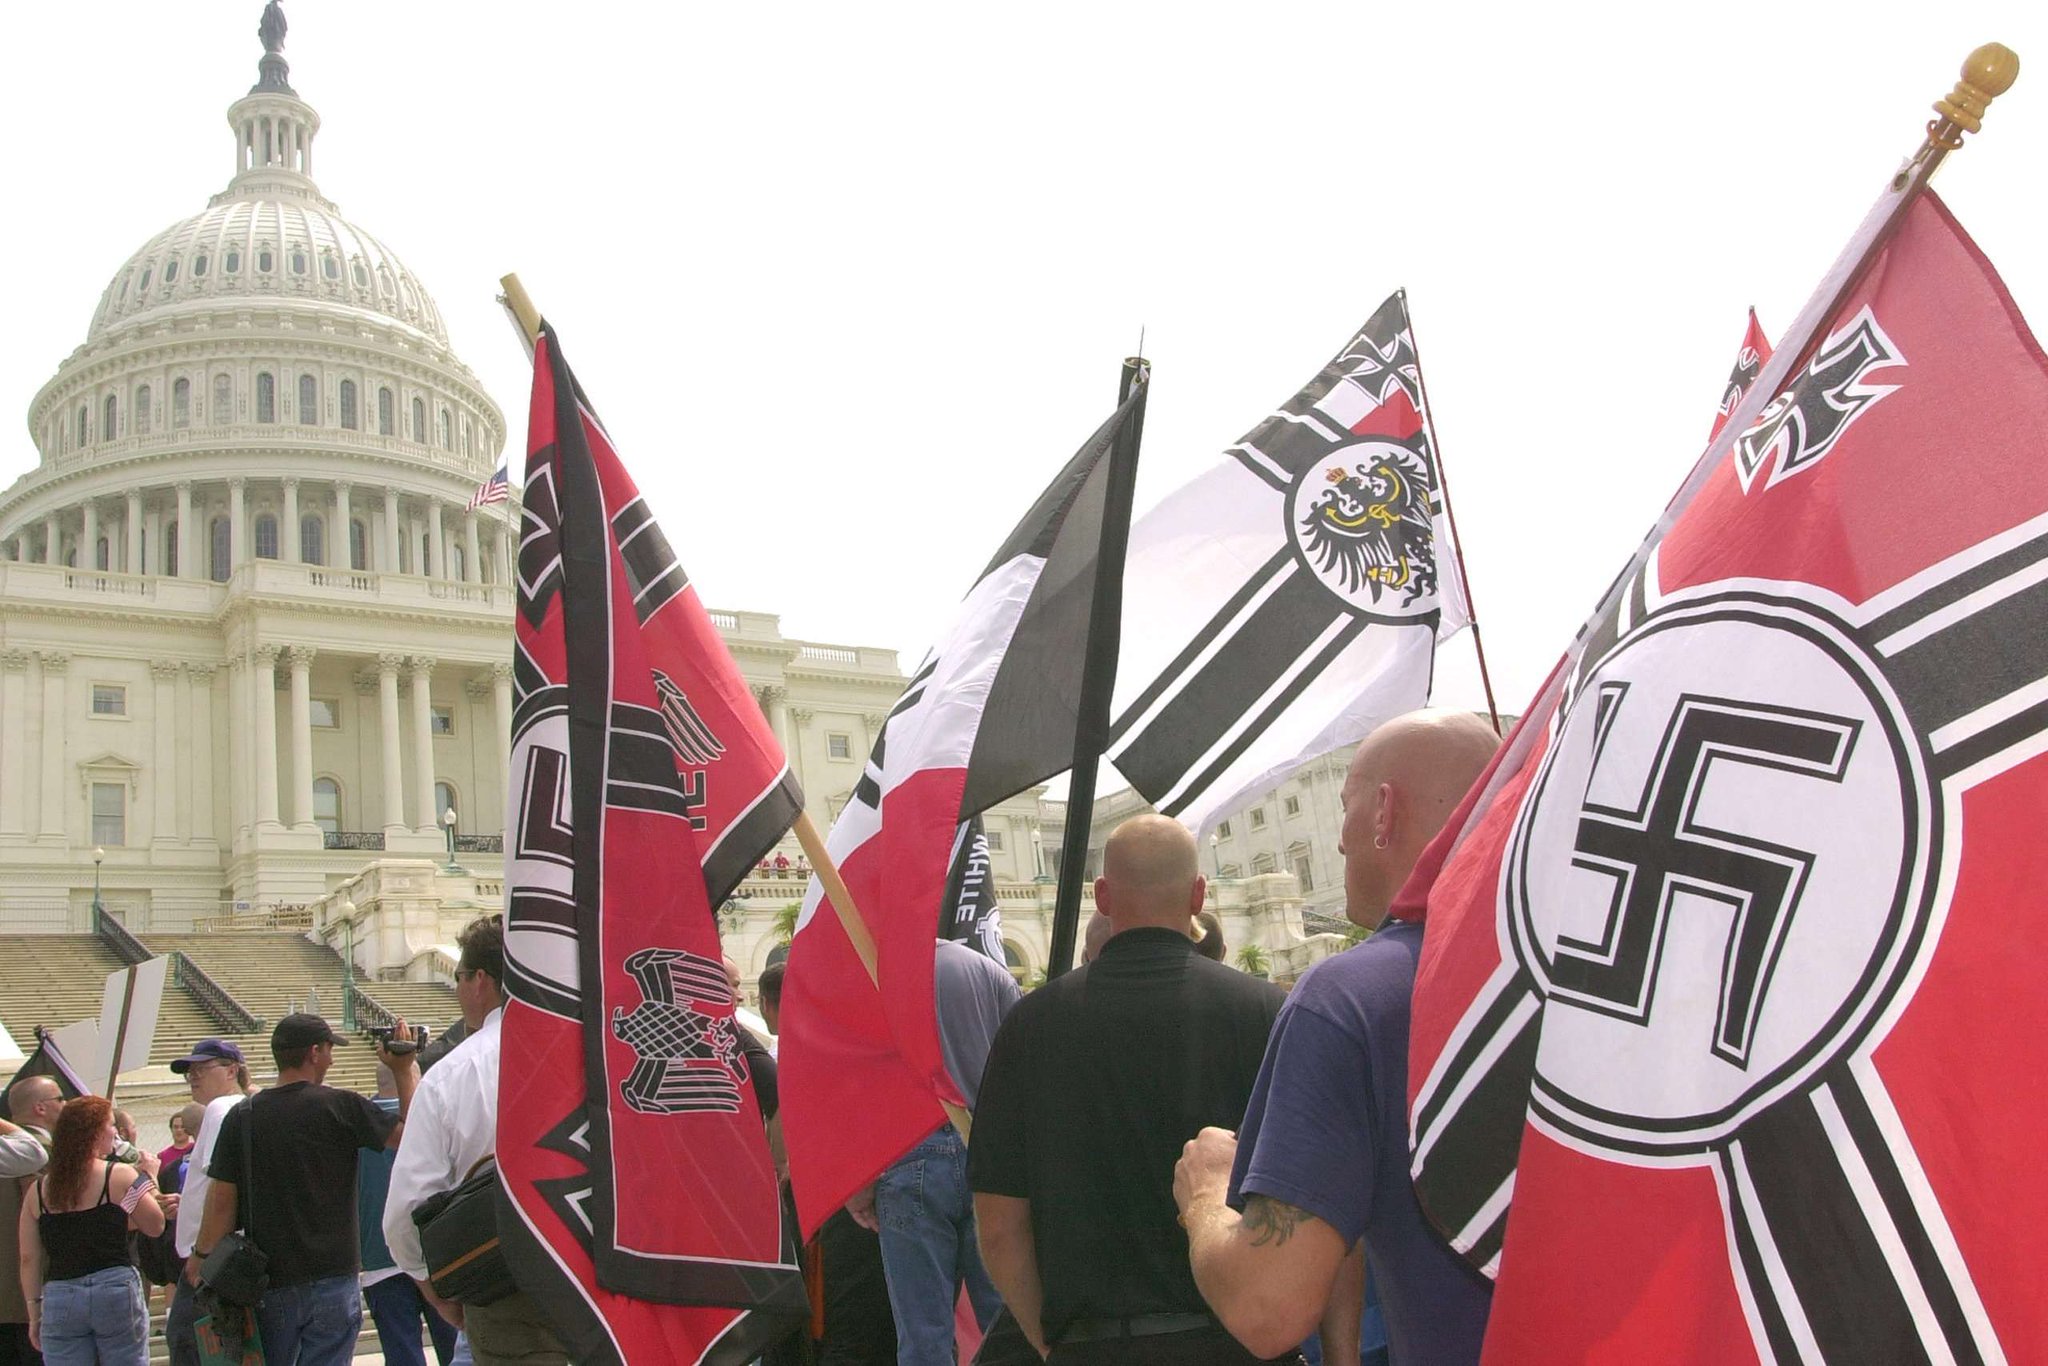 1 национал. Нацистская партия США. Национал Социалистическая партия США. Флаг неонацистов США. Американские нацисты.